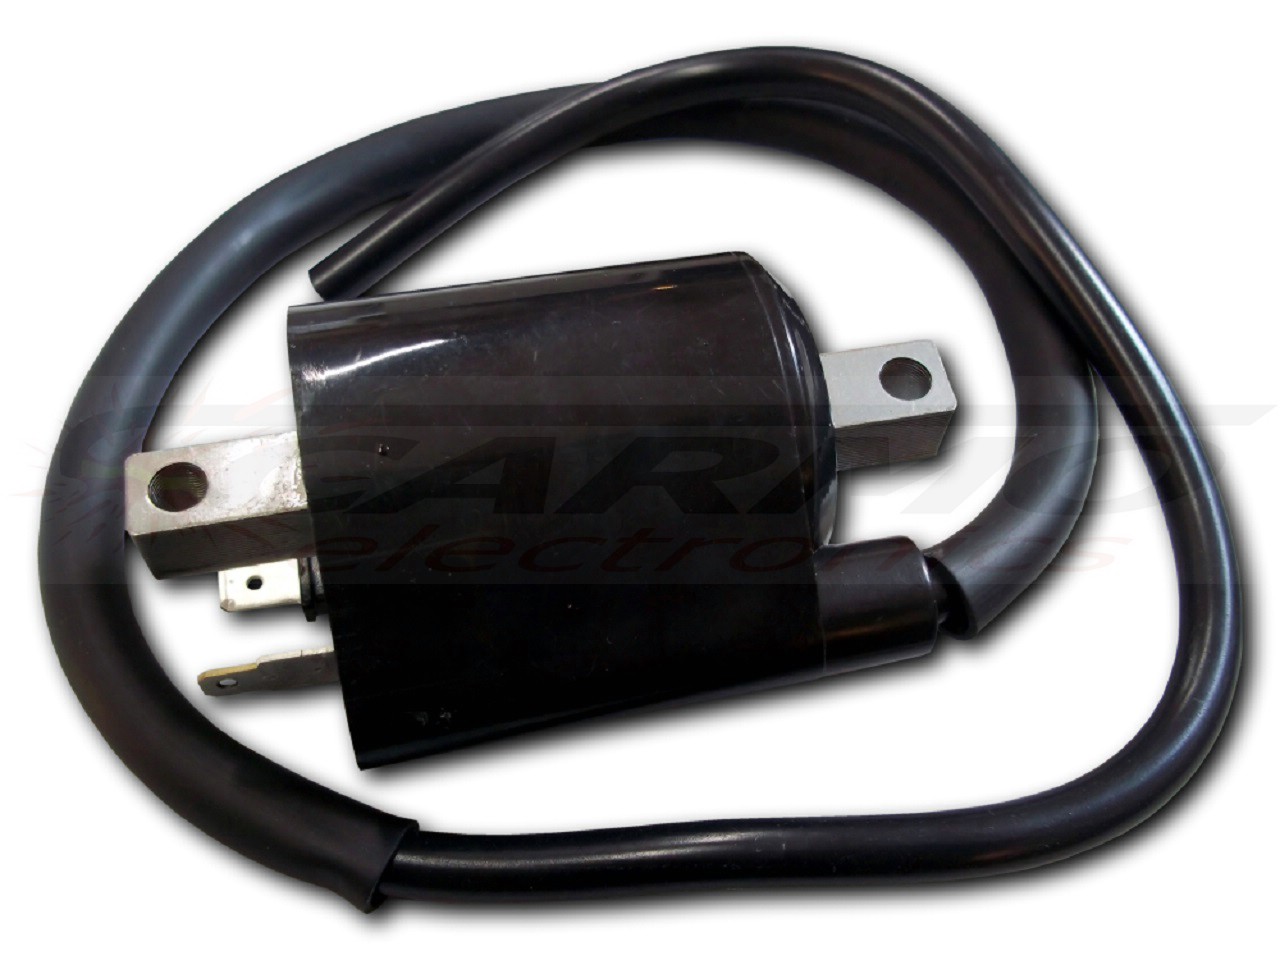 HT13 - CDI ignition coil - Clique na Imagem para Fechar